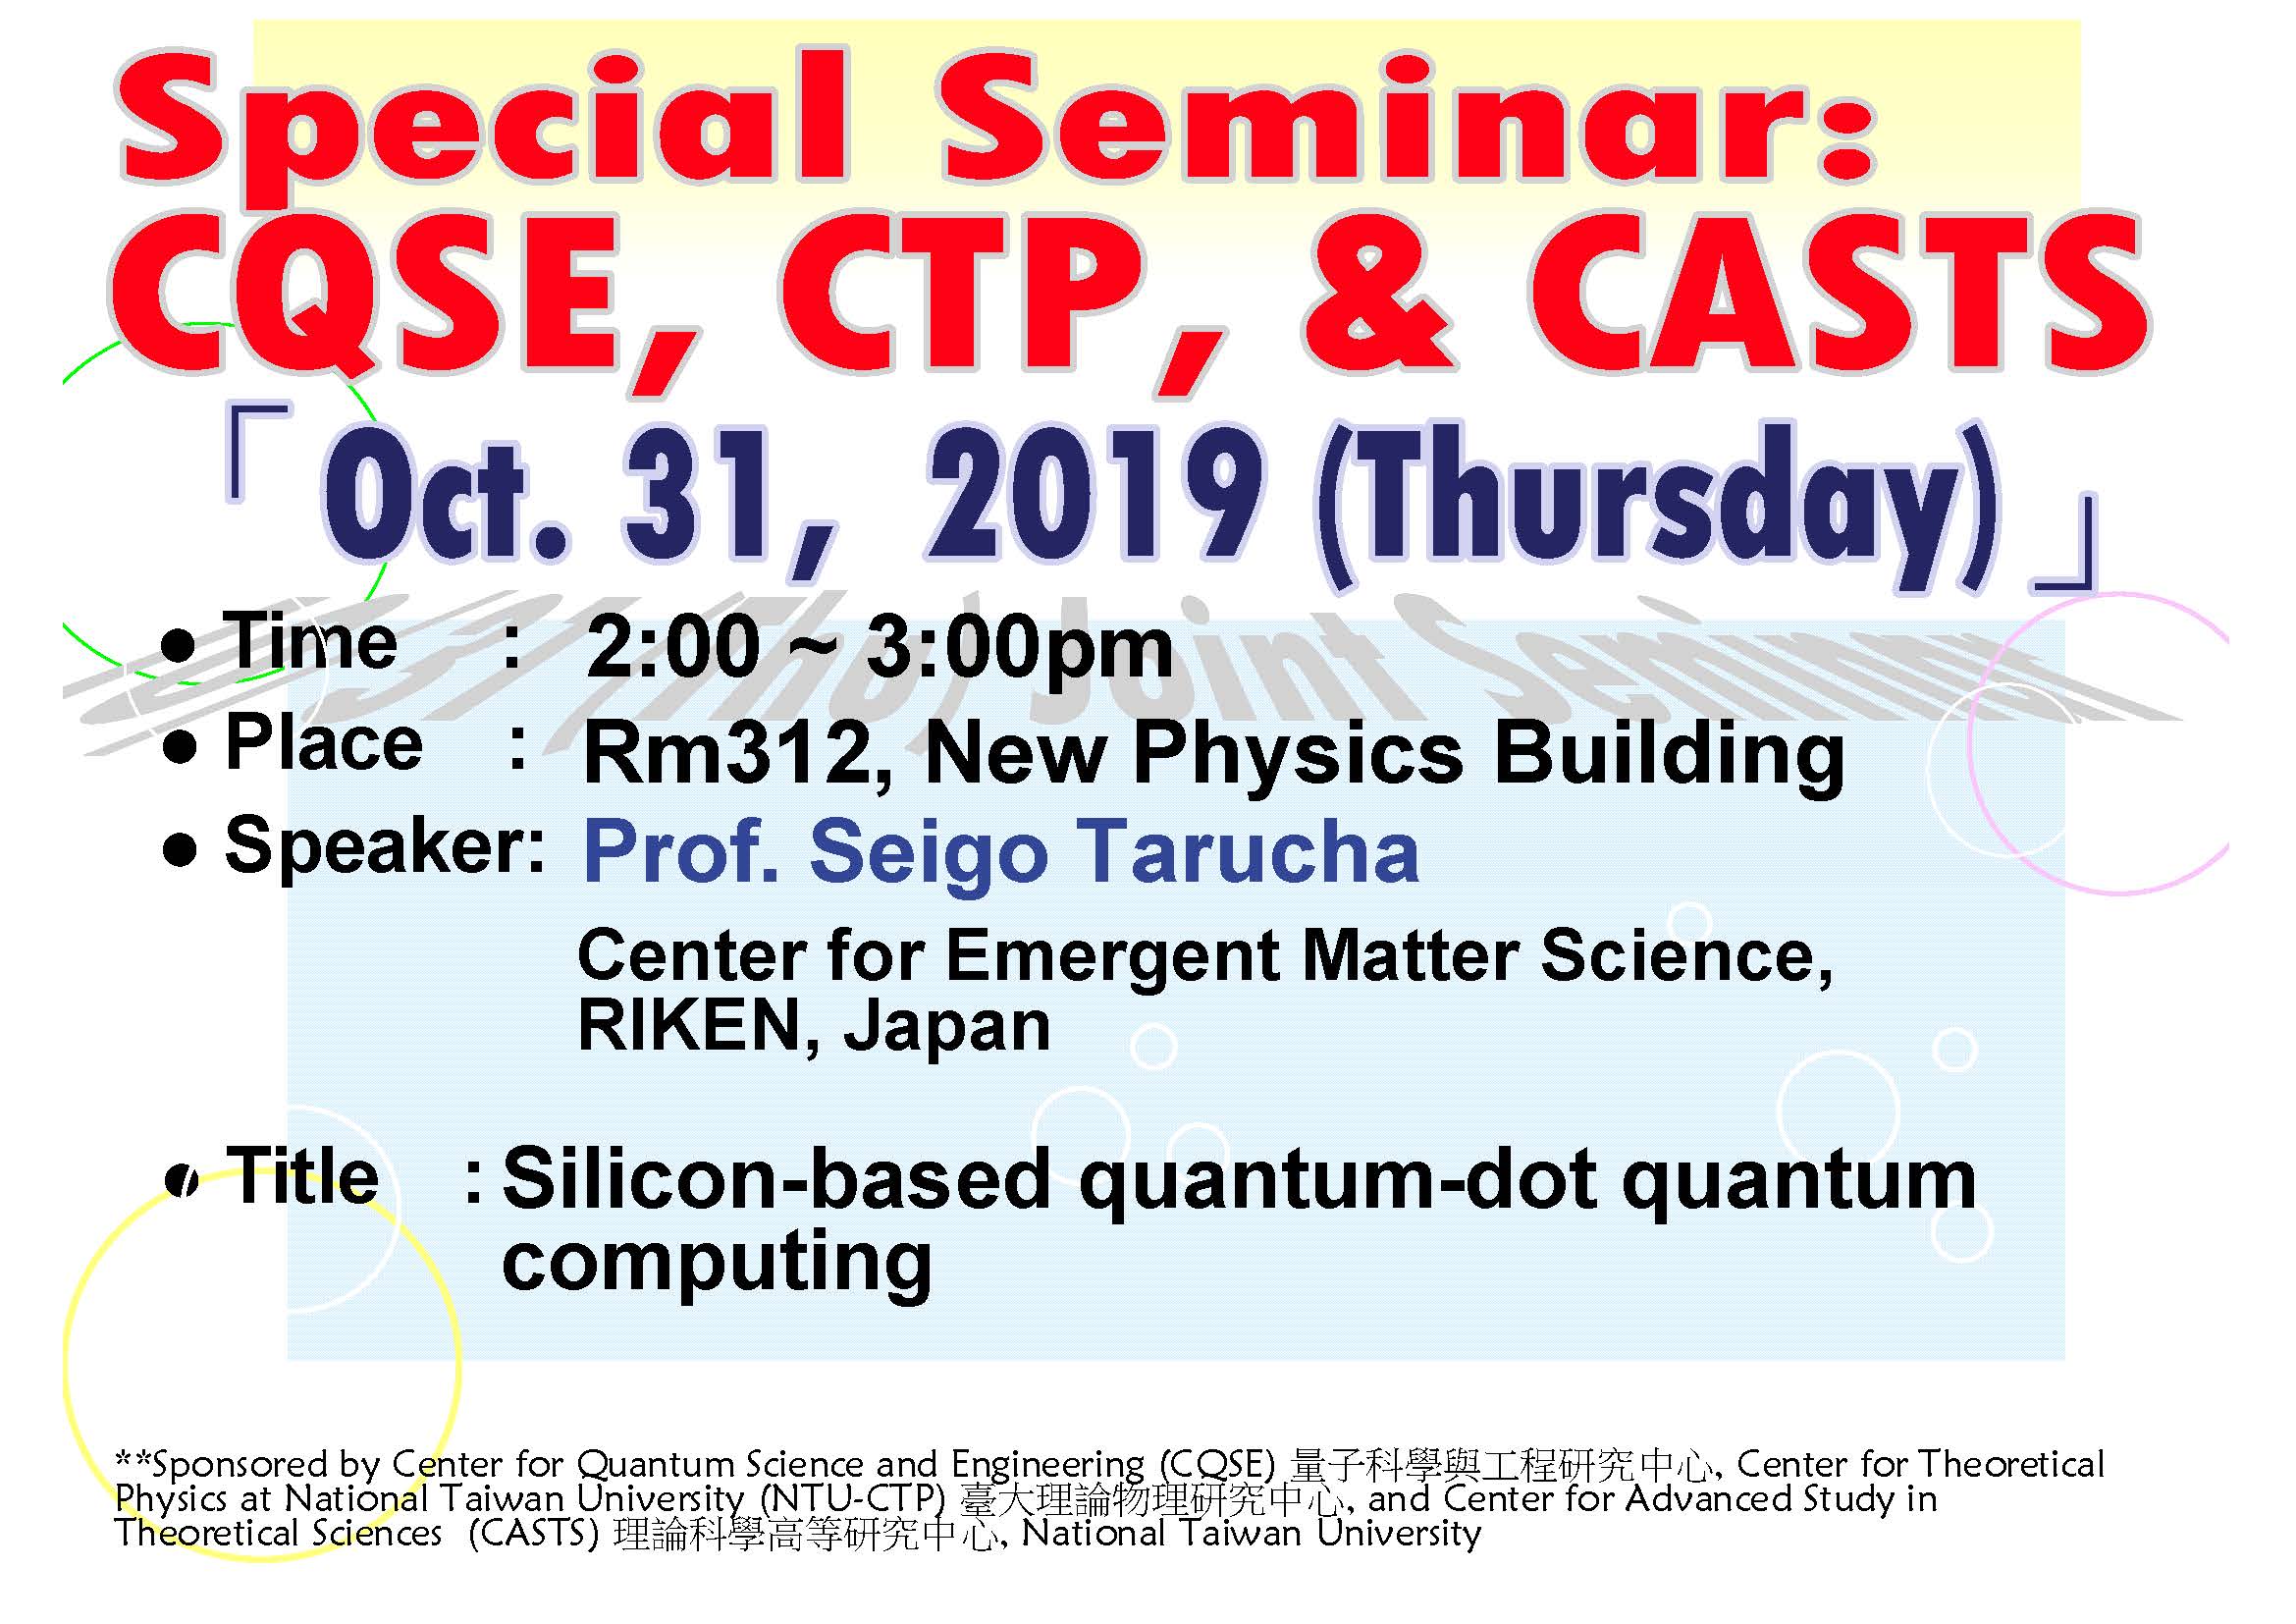 Special Seminar - CQSE, CTP, & CASTS Joint Seminar